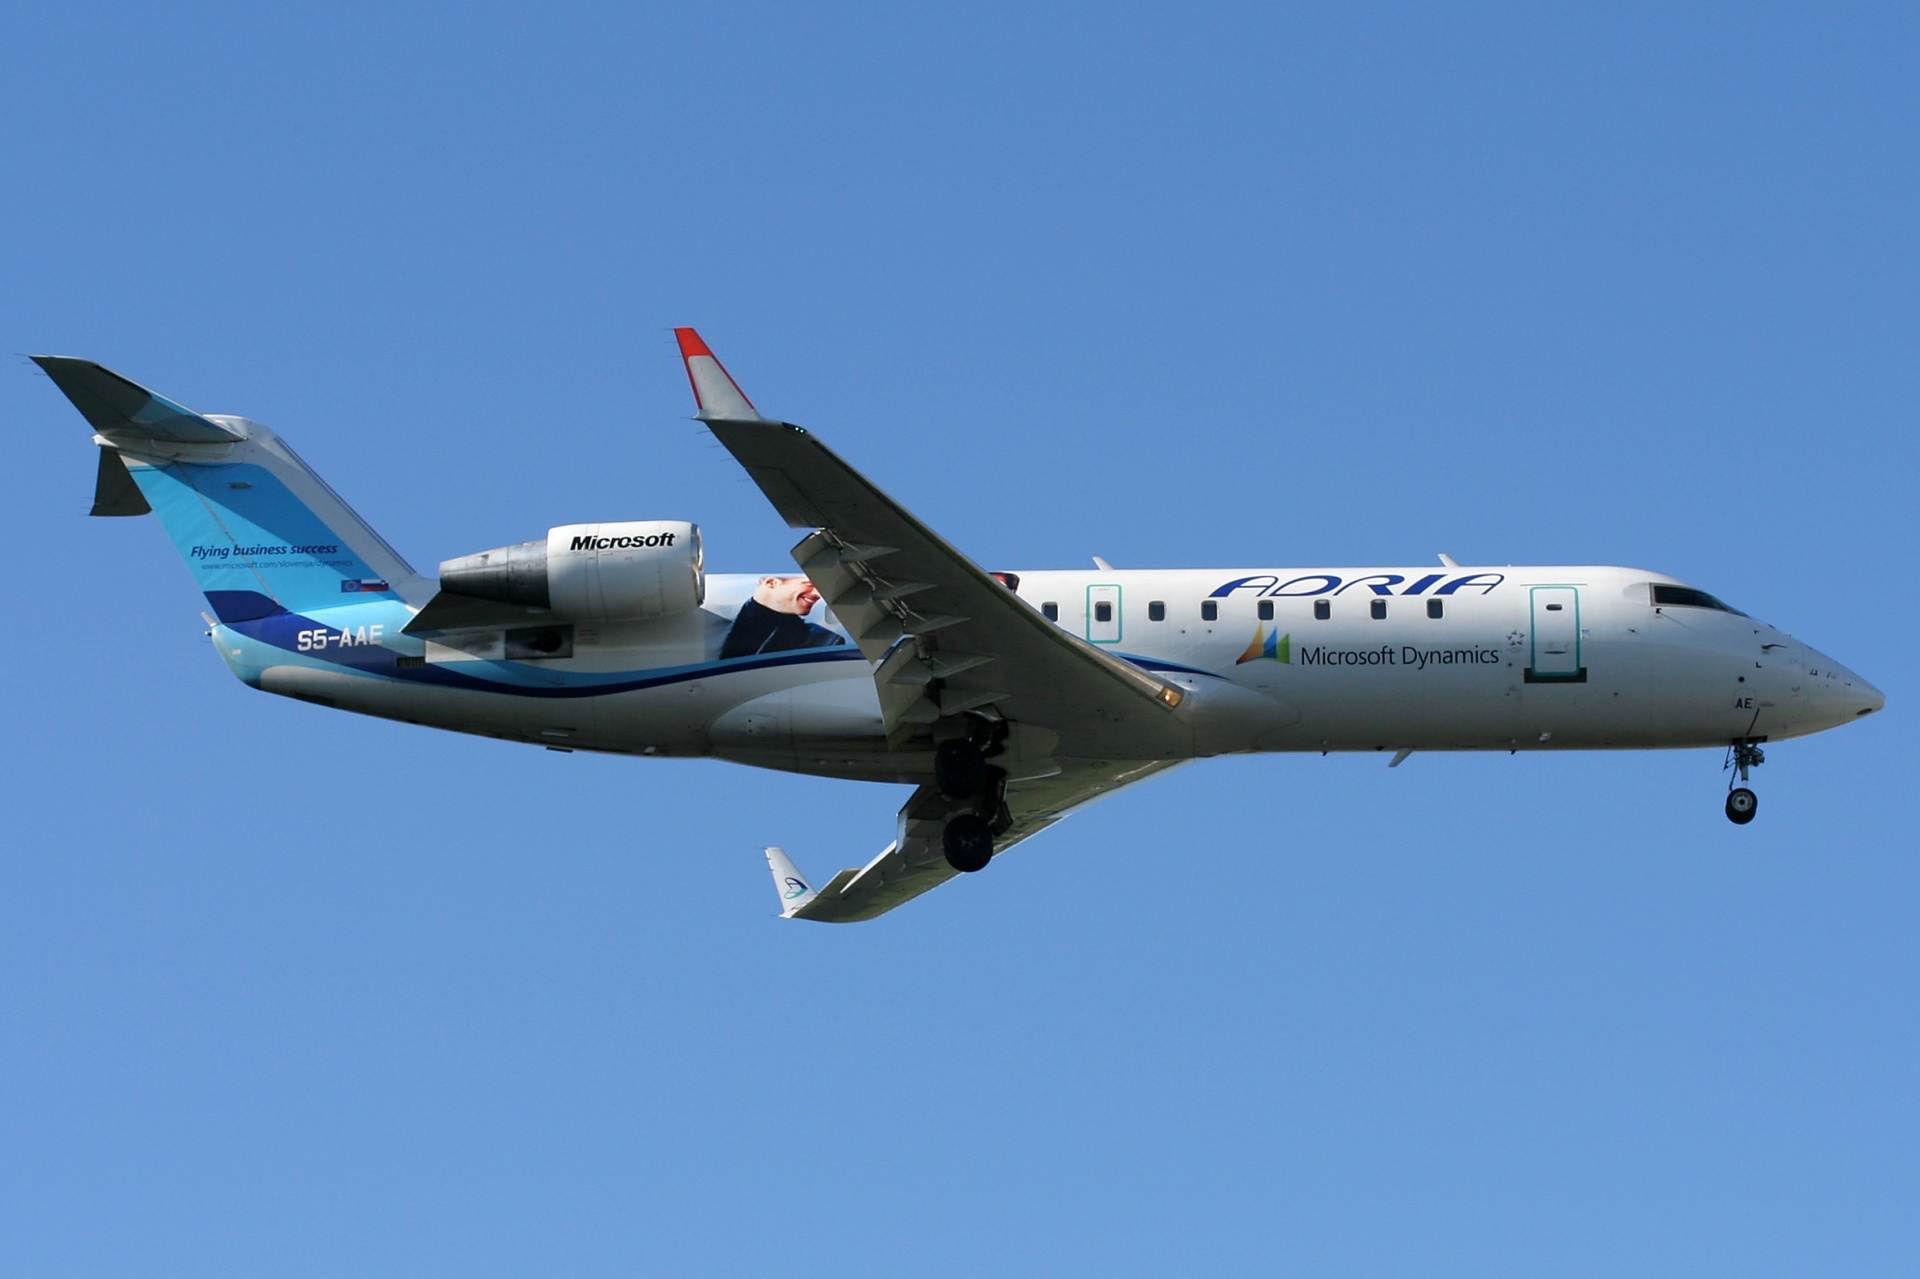 S5-AAE (Microsoft Dynamics livery) (Aircraft » EPWA Spotting » Bombardier CL-600 Regional Jet » CRJ-200 » Adria Airways)